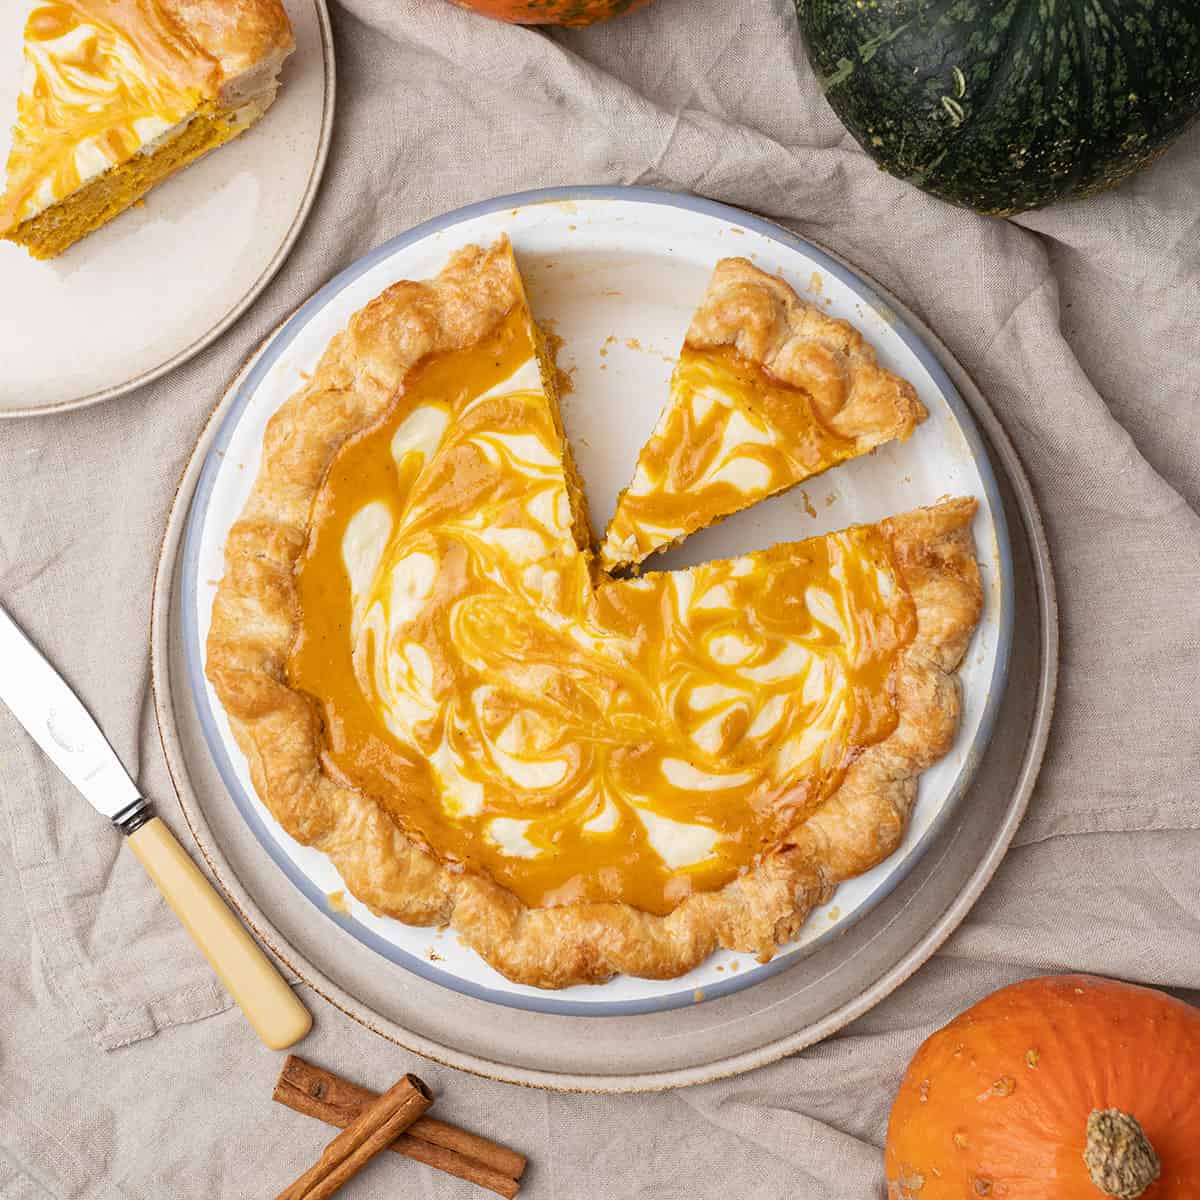 Pumpkin cream cheese pie on a plate.